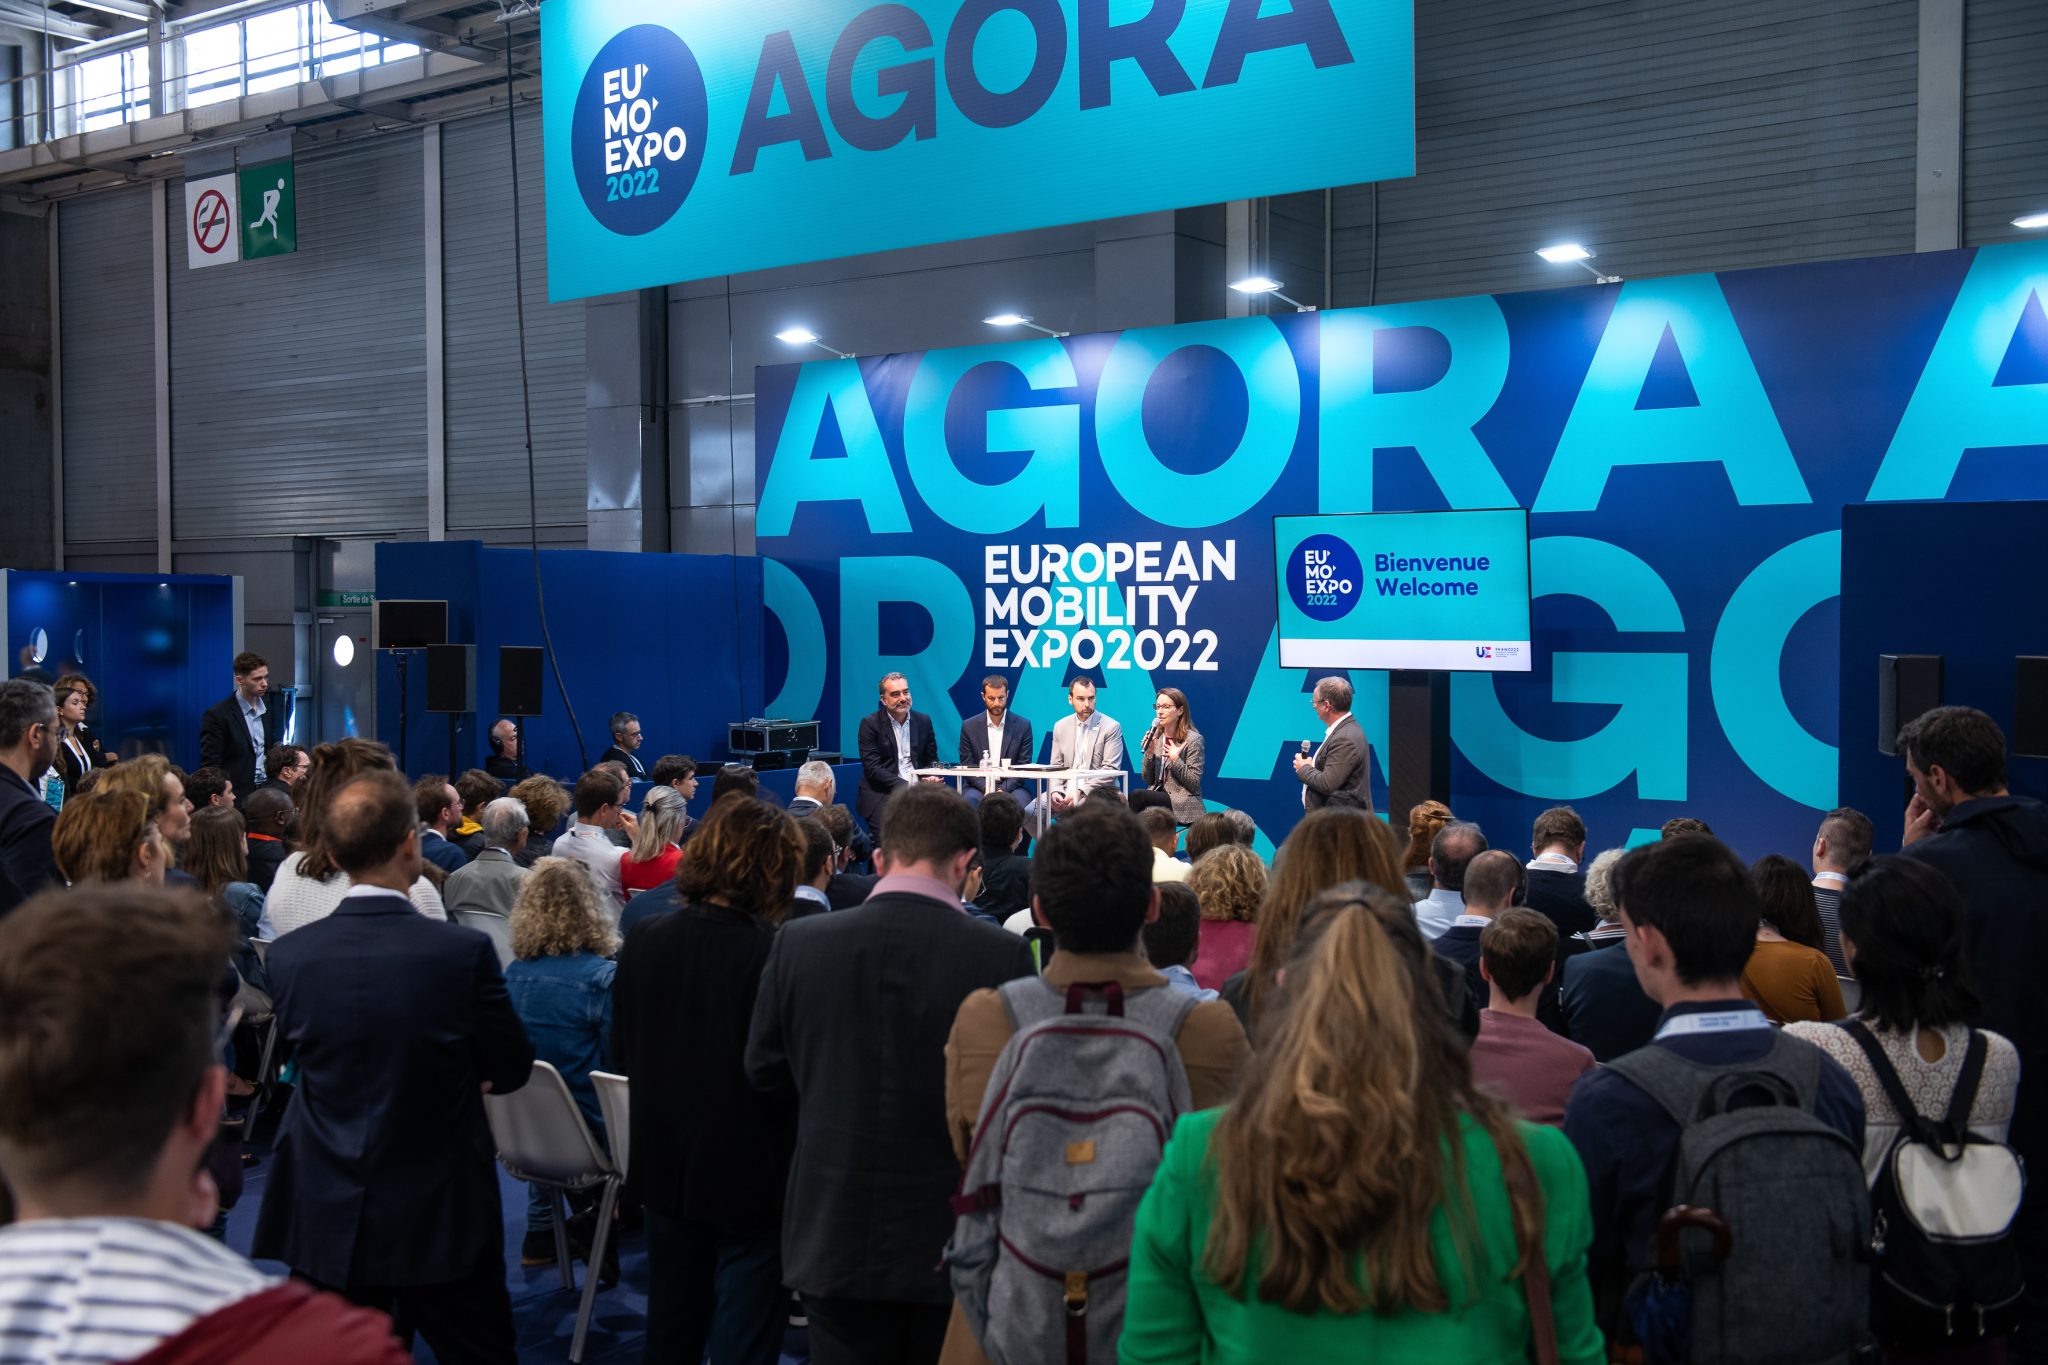 Les conférences AGORA European Mobility Expo